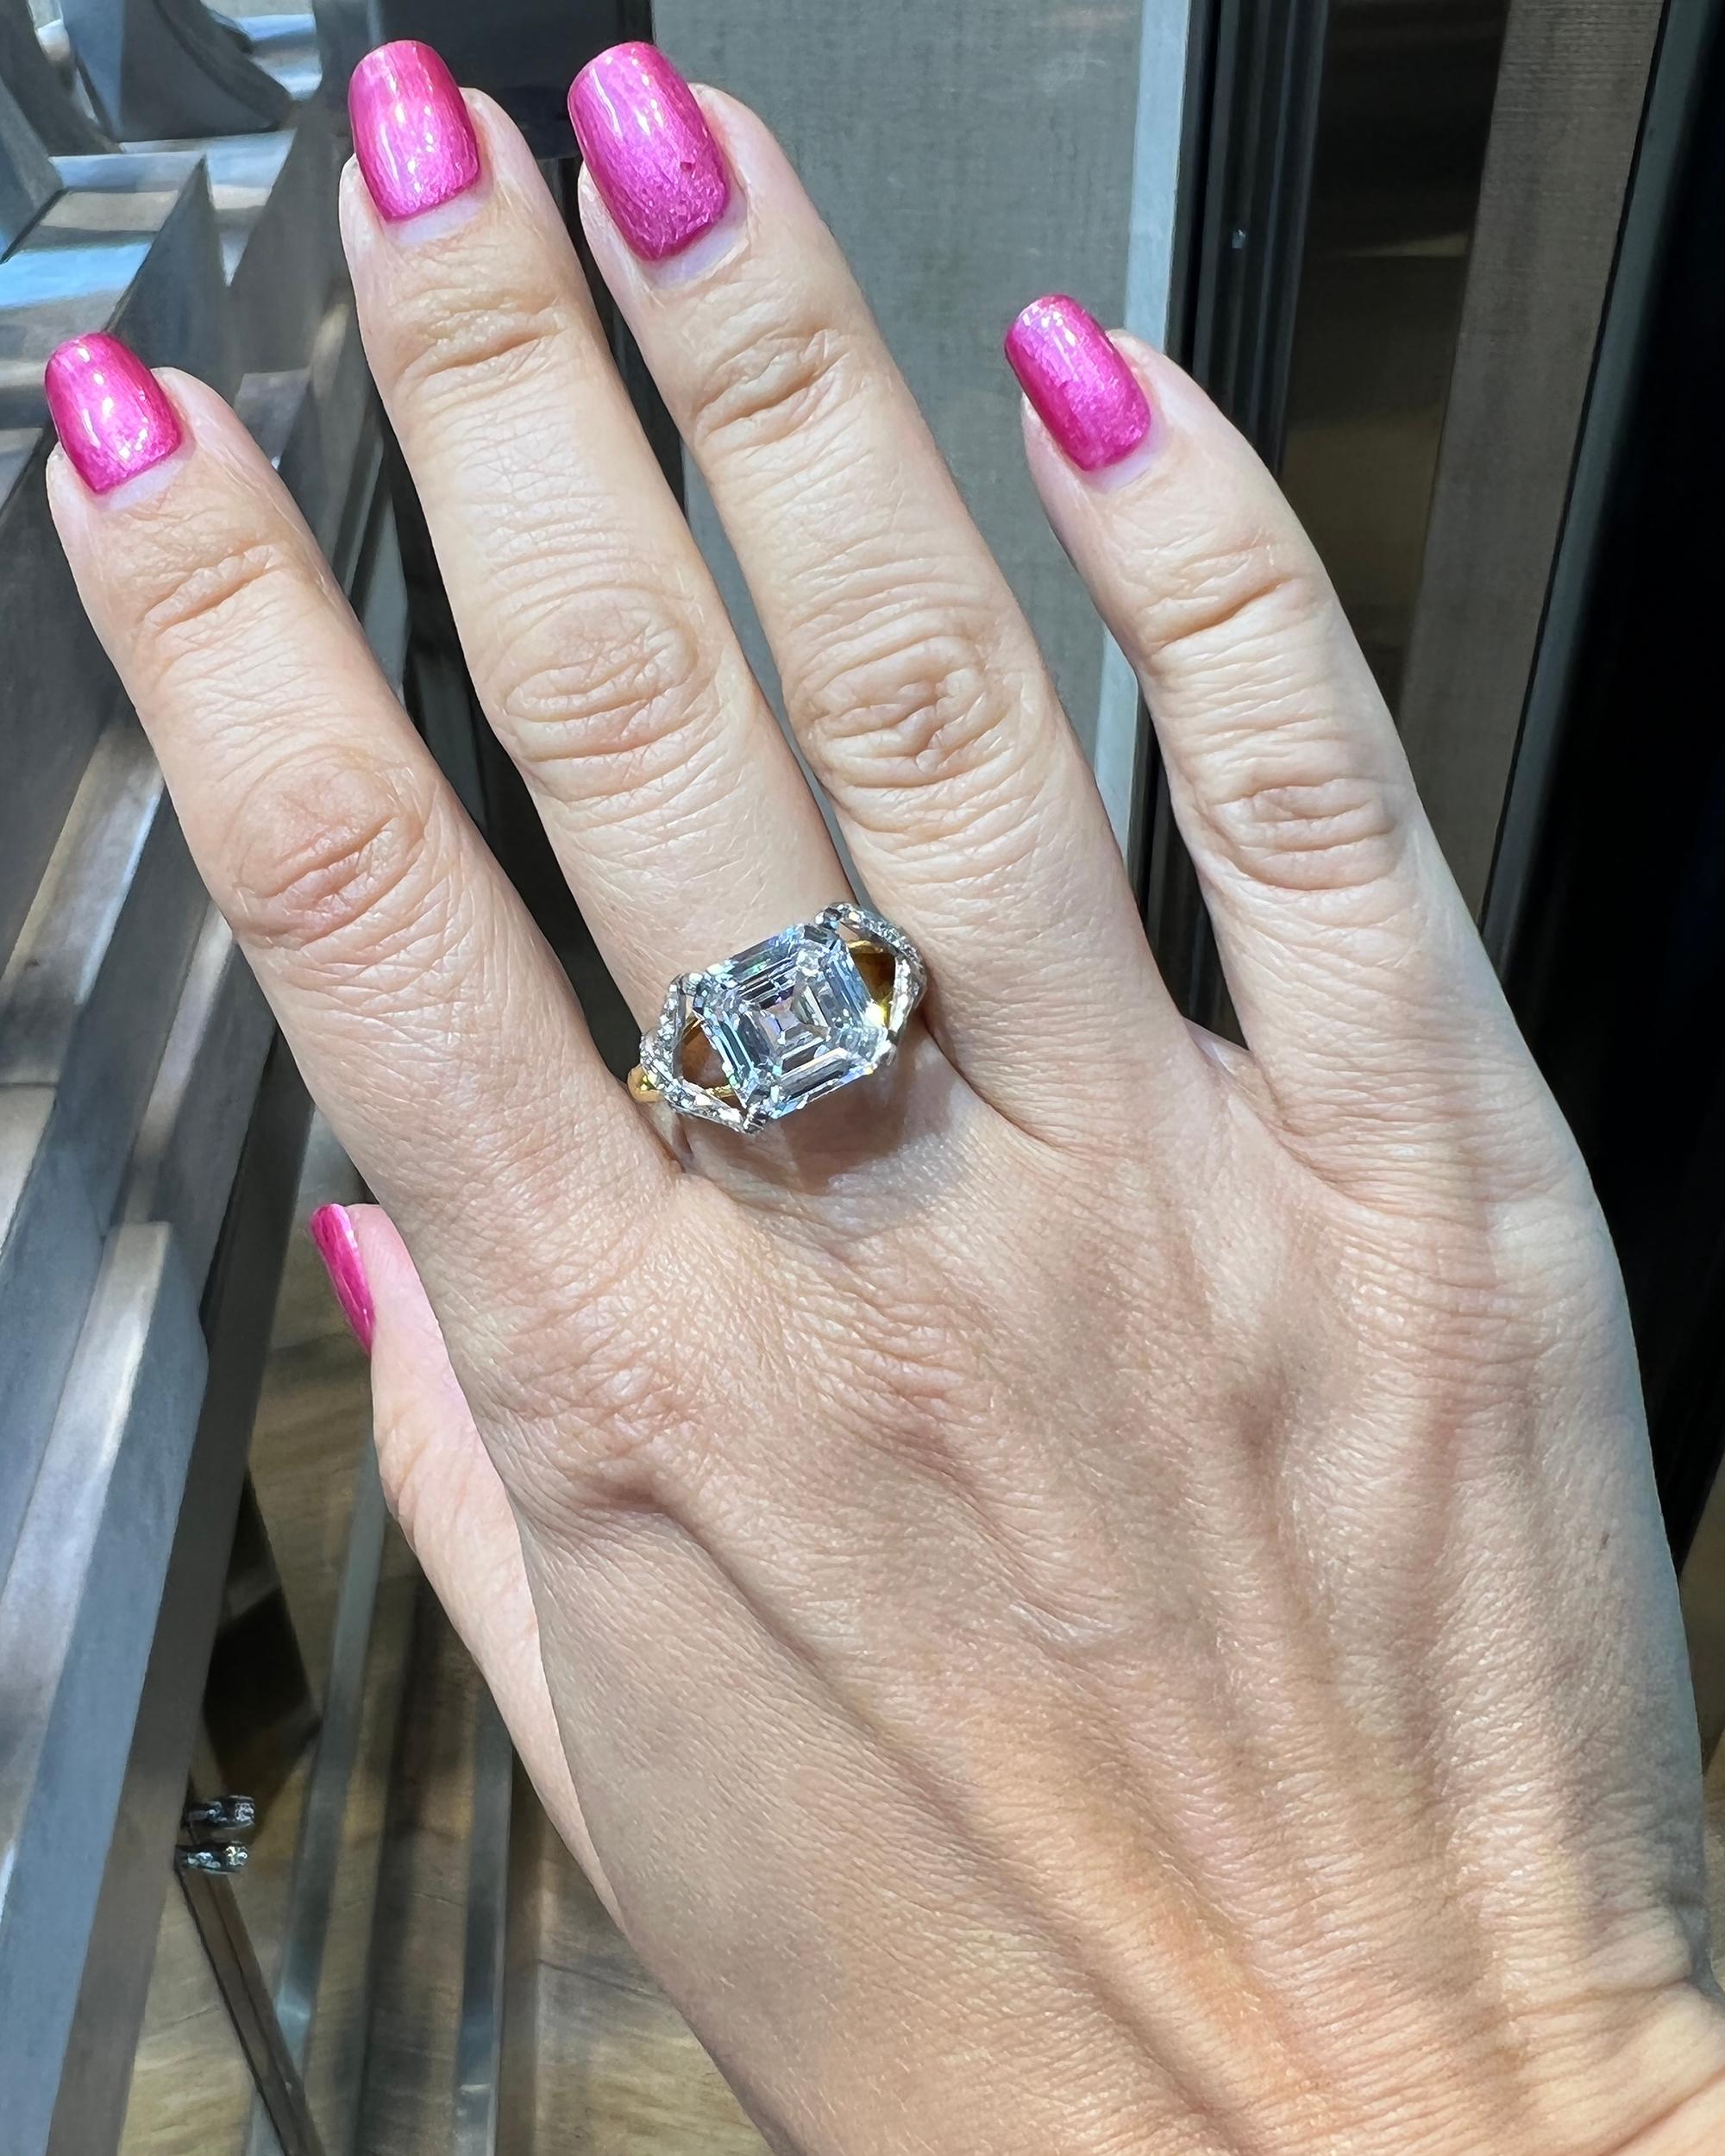 Tiffany & Co. Schlumberger Bague en diamant certifié GIA de 3,92 carats de couleur E.
Une superbe bague réalisée par Schlumberger pour Tiffany & Co.
Le diamant central est une taille émeraude carrée, de couleur E et de pureté SI1.
Le diamant est